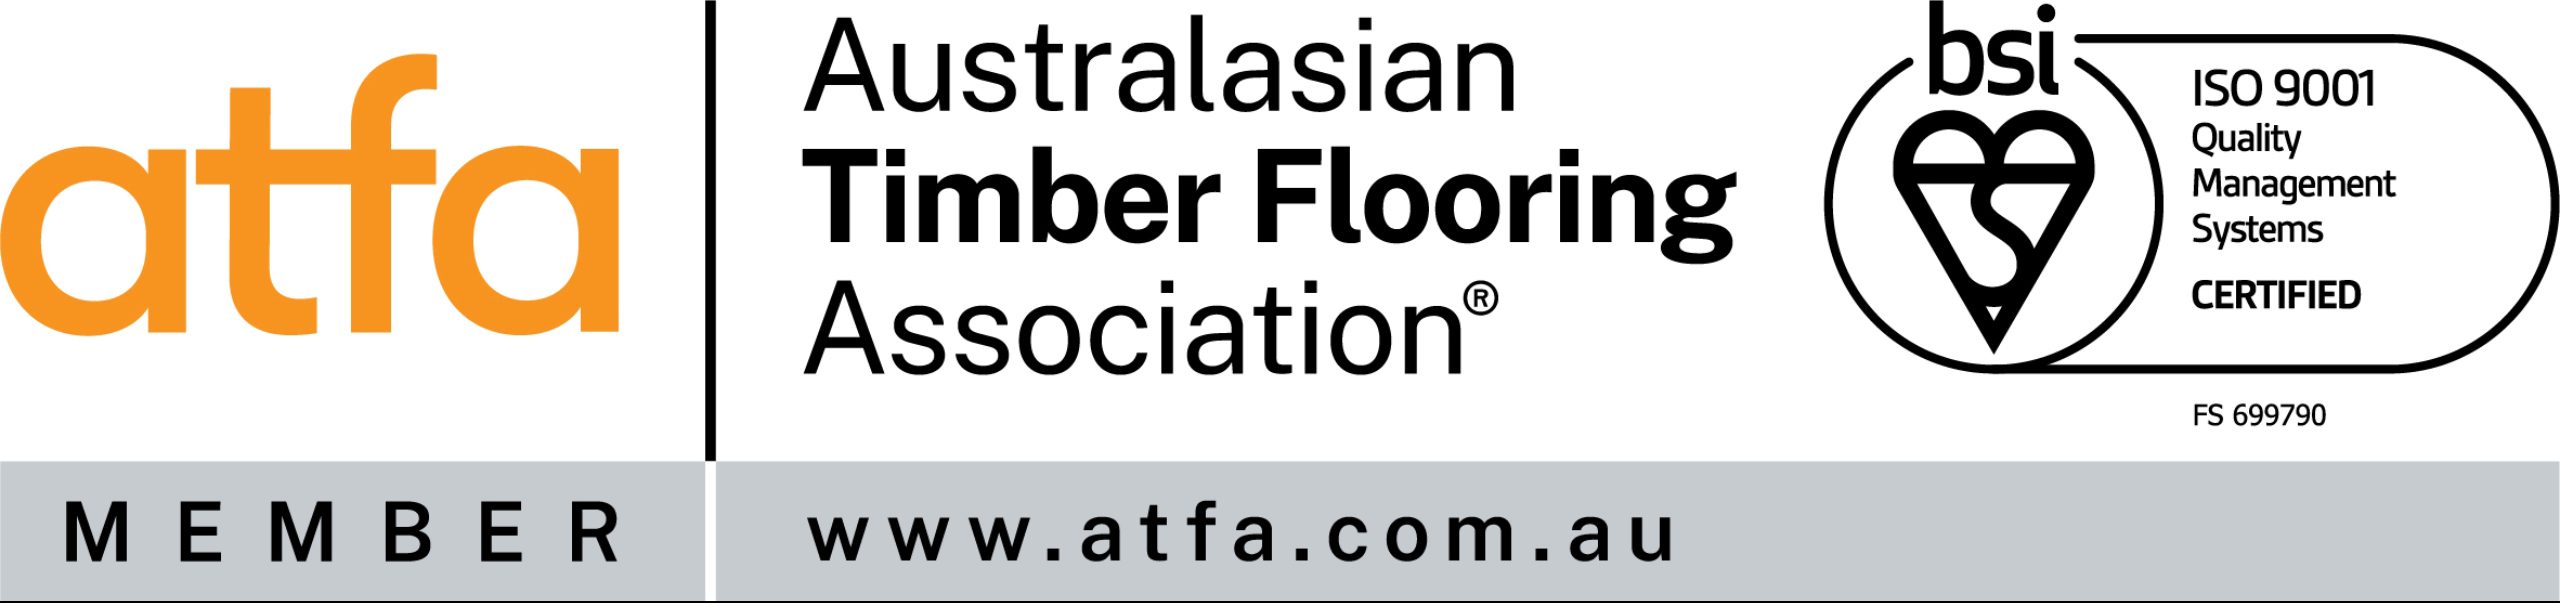 Australasian timber flooring Association Certified